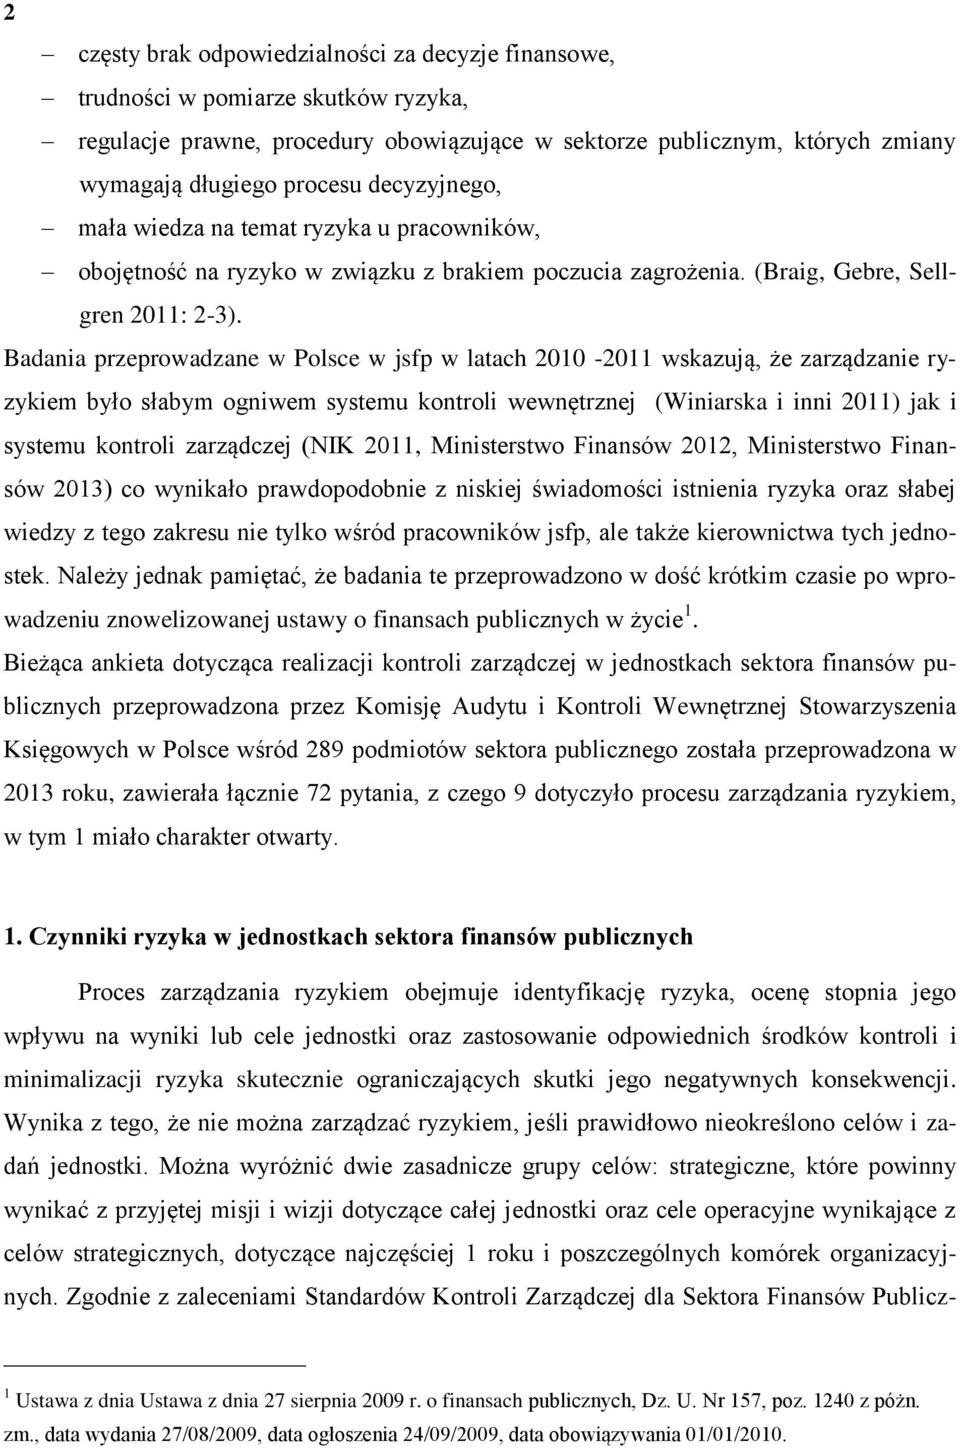 Badania przeprowadzane w Polsce w jsfp w latach 2010-2011 wskazują, że zarządzanie ryzykiem było słabym ogniwem systemu kontroli wewnętrznej (Winiarska i inni 2011) jak i systemu kontroli zarządczej